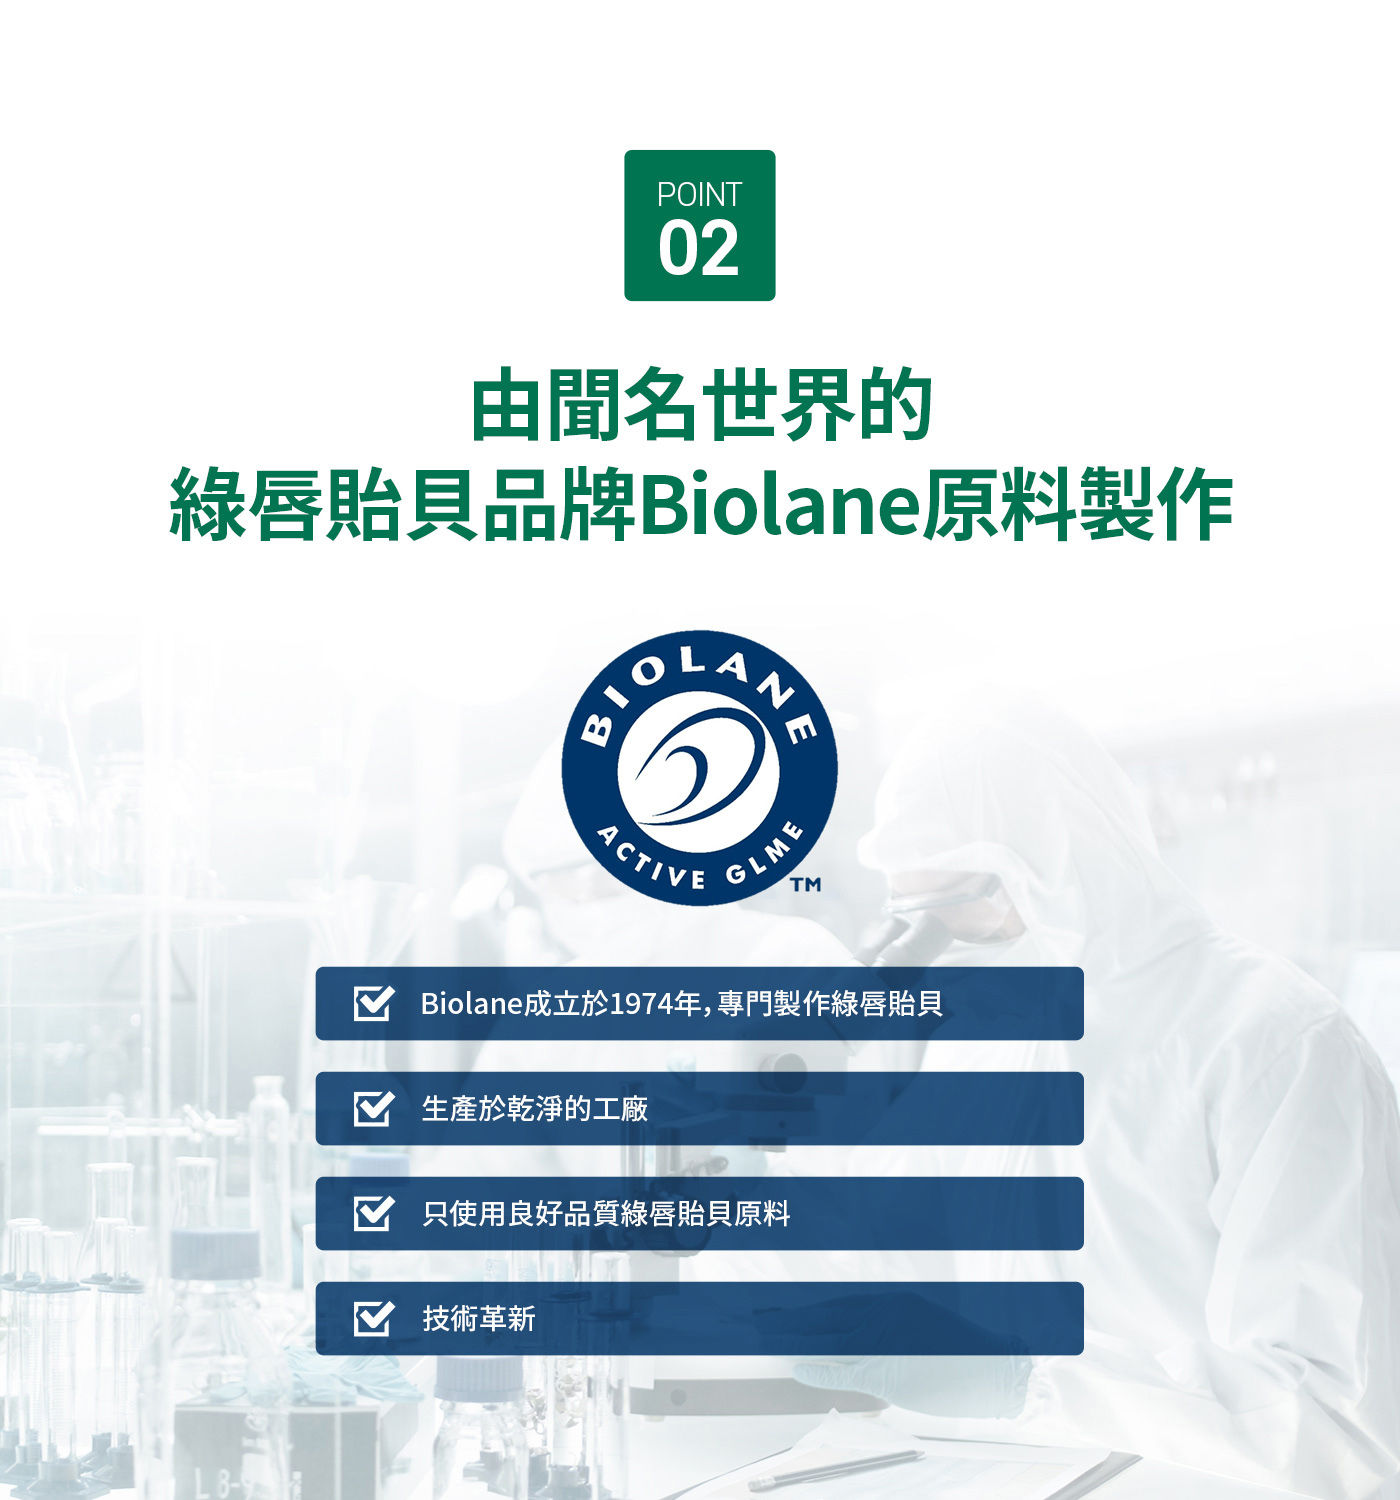 Nz Origin 綠唇貽貝萃取膠囊 60粒，由聞名世界的綠唇貽貝品牌Biolane原料製作，Biolane成立於1974年專門製作綠唇貽貝，生產於乾淨的工廠，只使用良好品質綠唇貽貝原料，技術革新